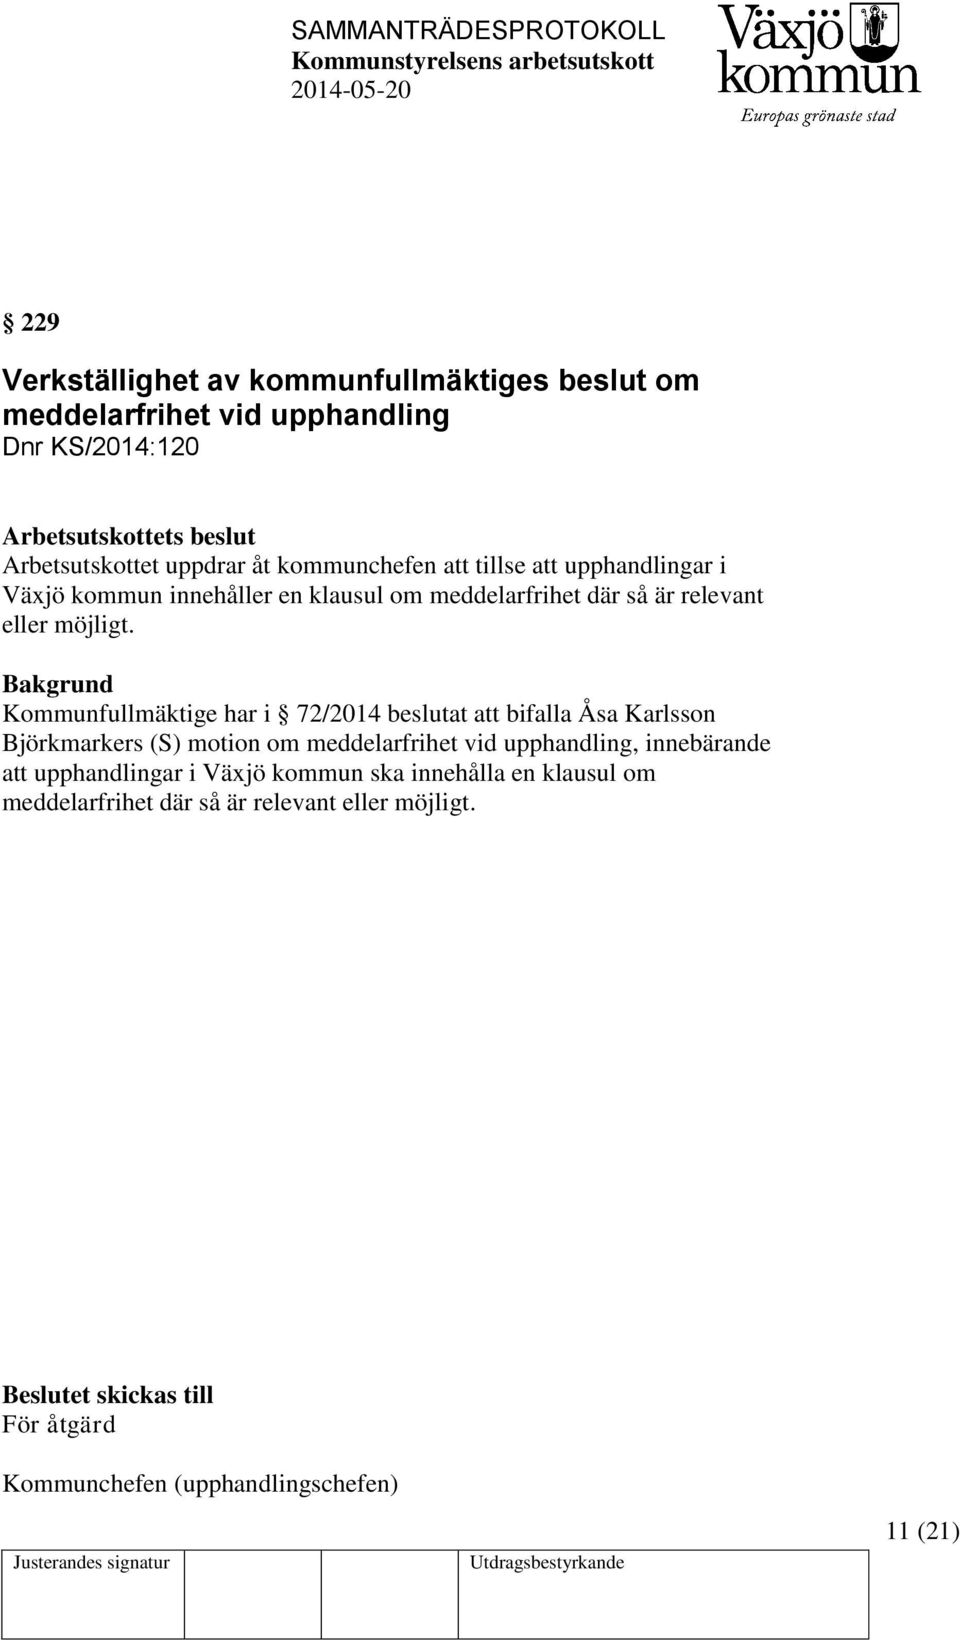 Kommunfullmäktige har i 72/2014 beslutat att bifalla Åsa Karlsson Björkmarkers (S) motion om meddelarfrihet vid upphandling, innebärande att